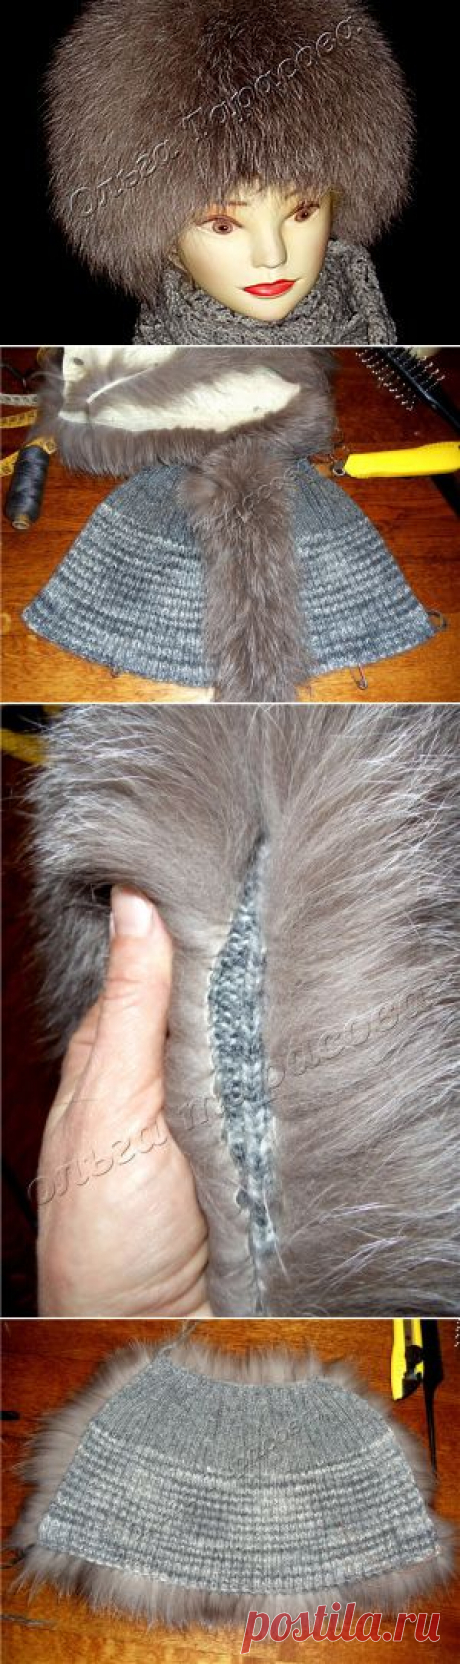 Изготовление меховой шапки в технике нашивания меховых полосочек на вязаную основу | Сделай сам!